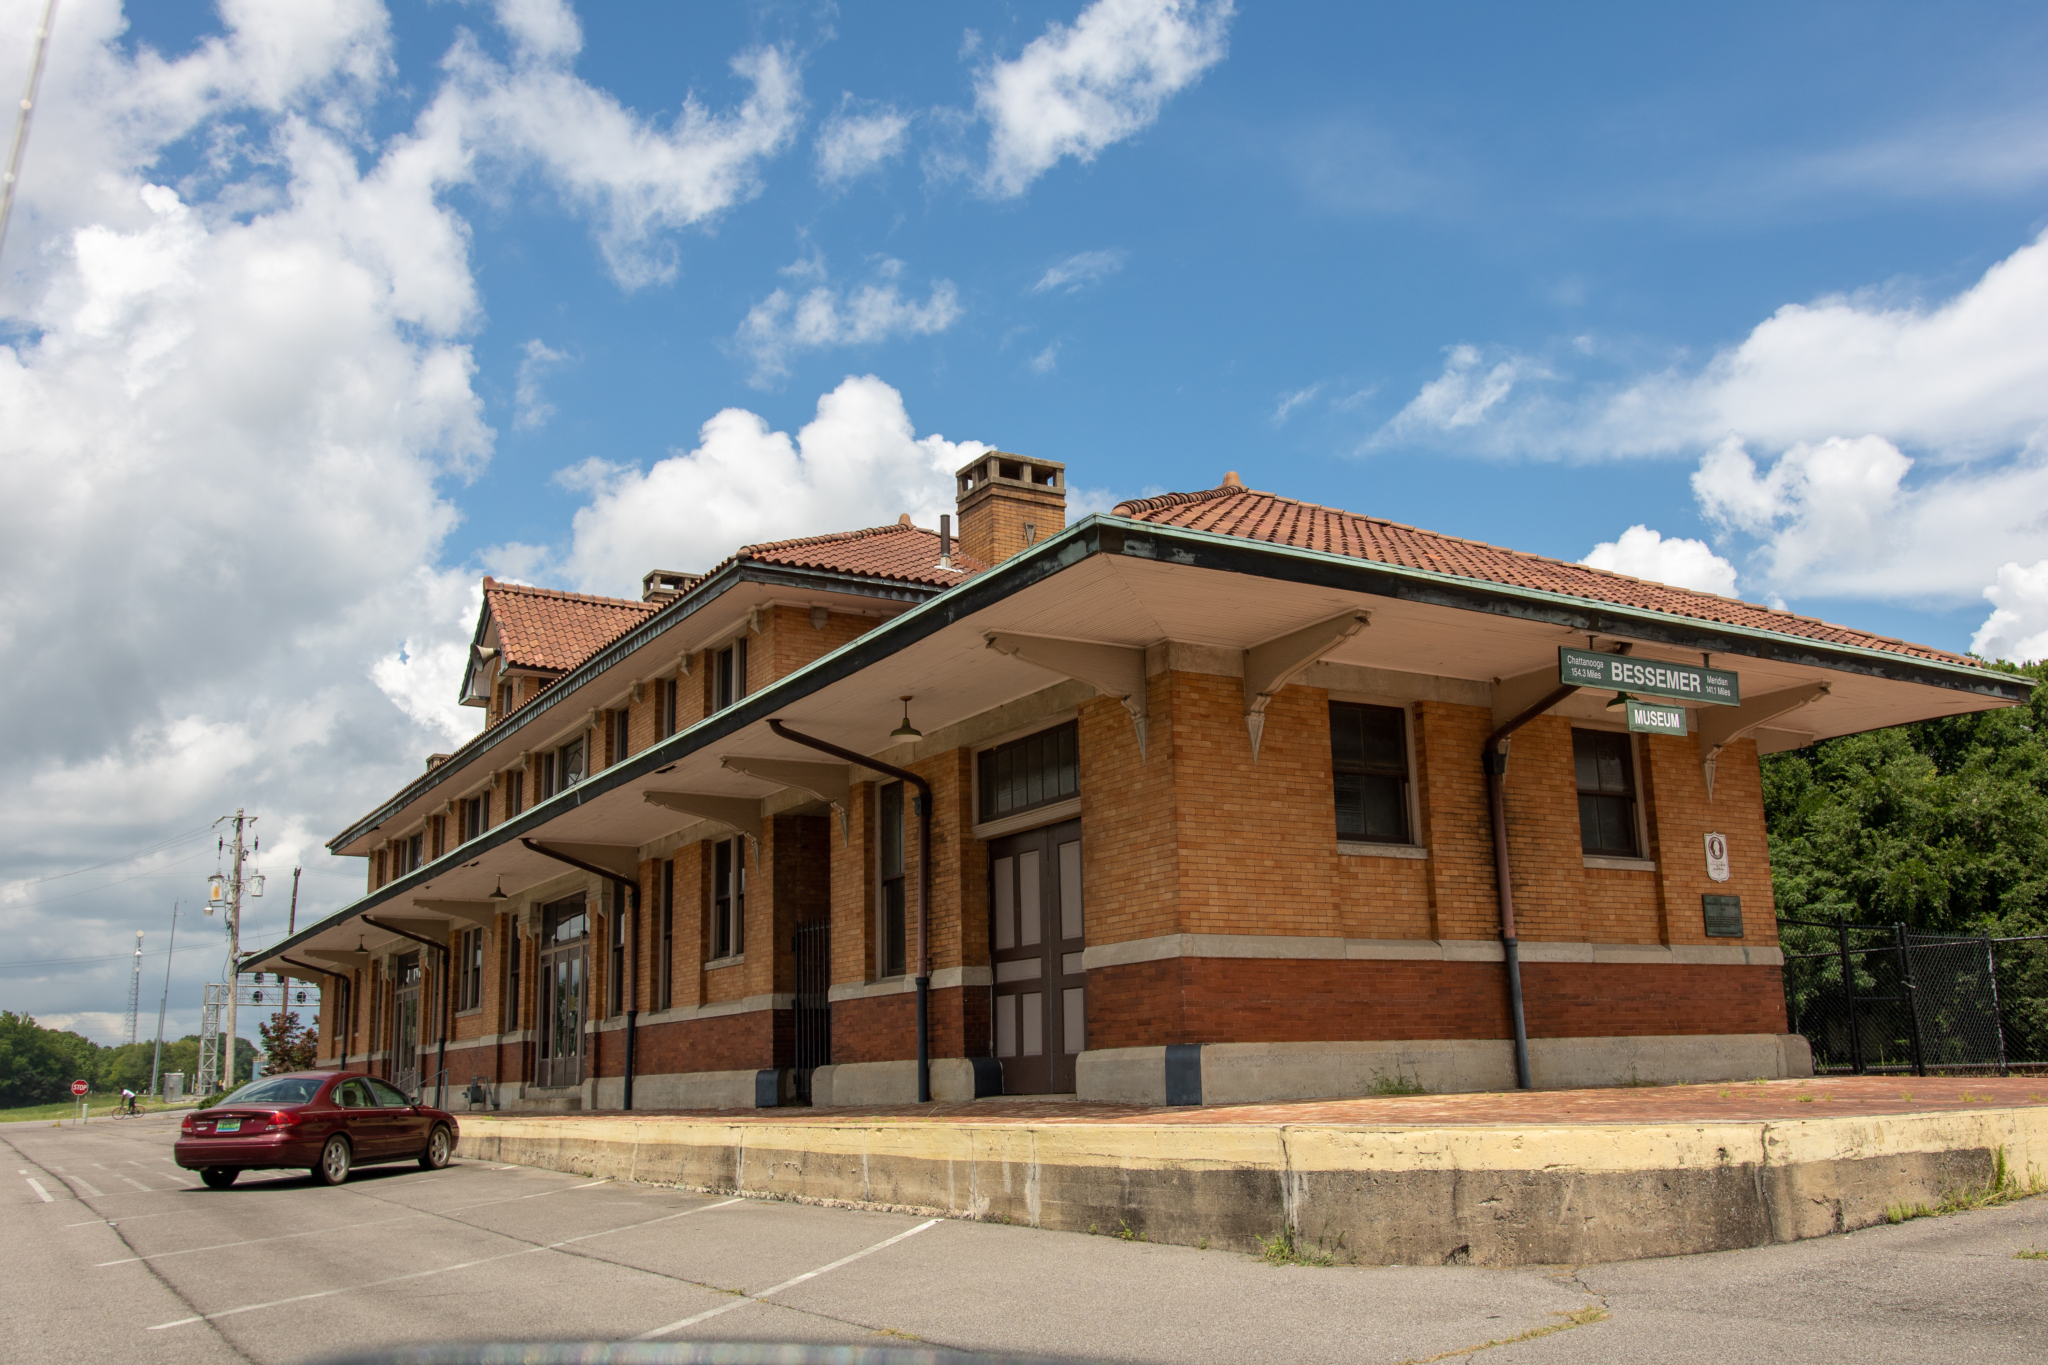 Bessemer Train Station